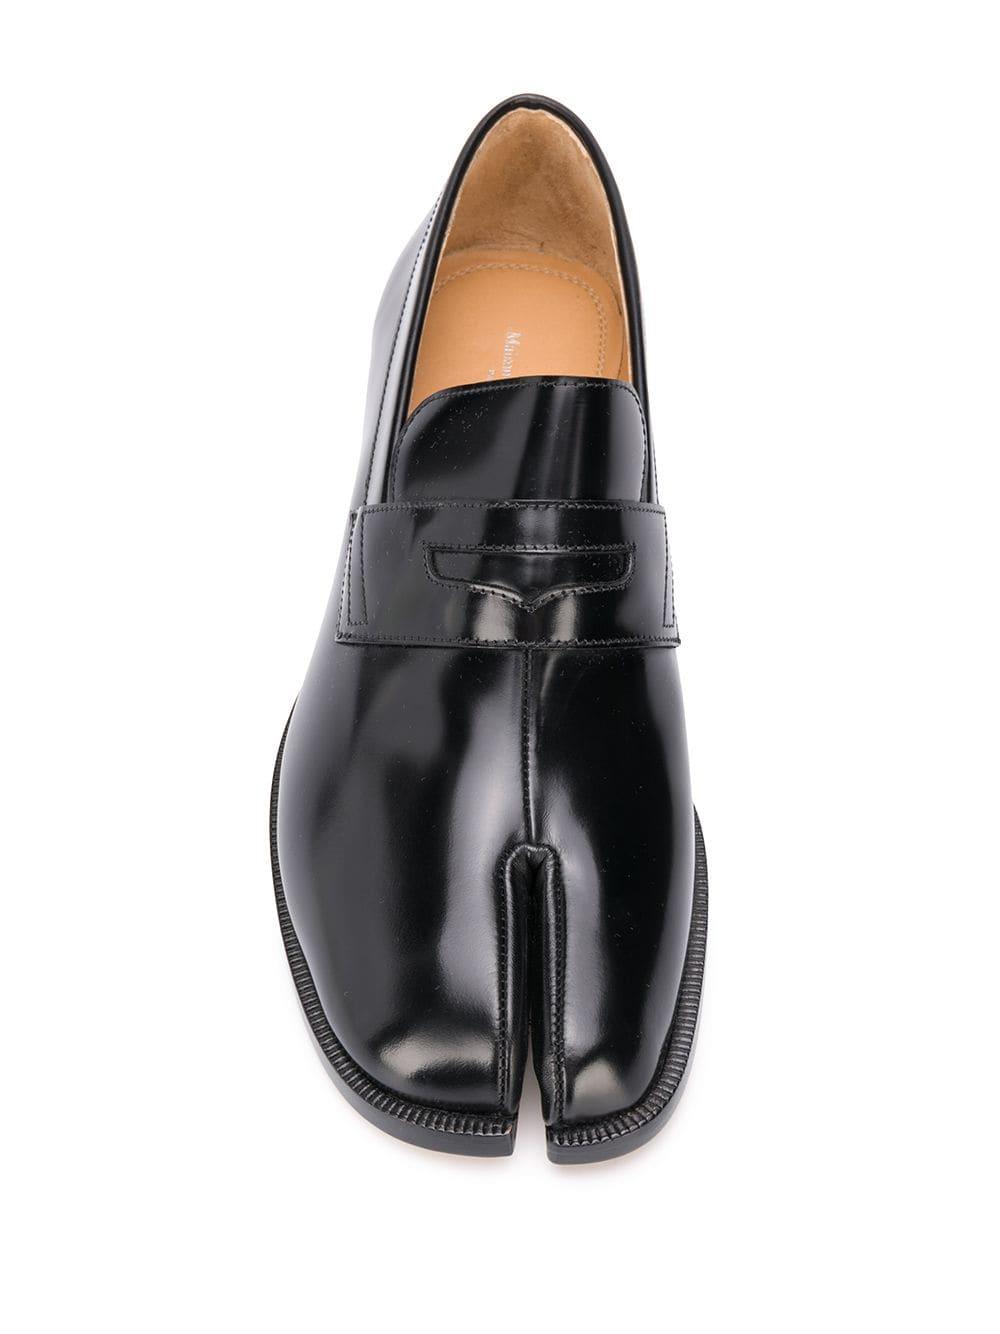 Maison Margiela Tabi Toe Loafers in Black for Men - Lyst